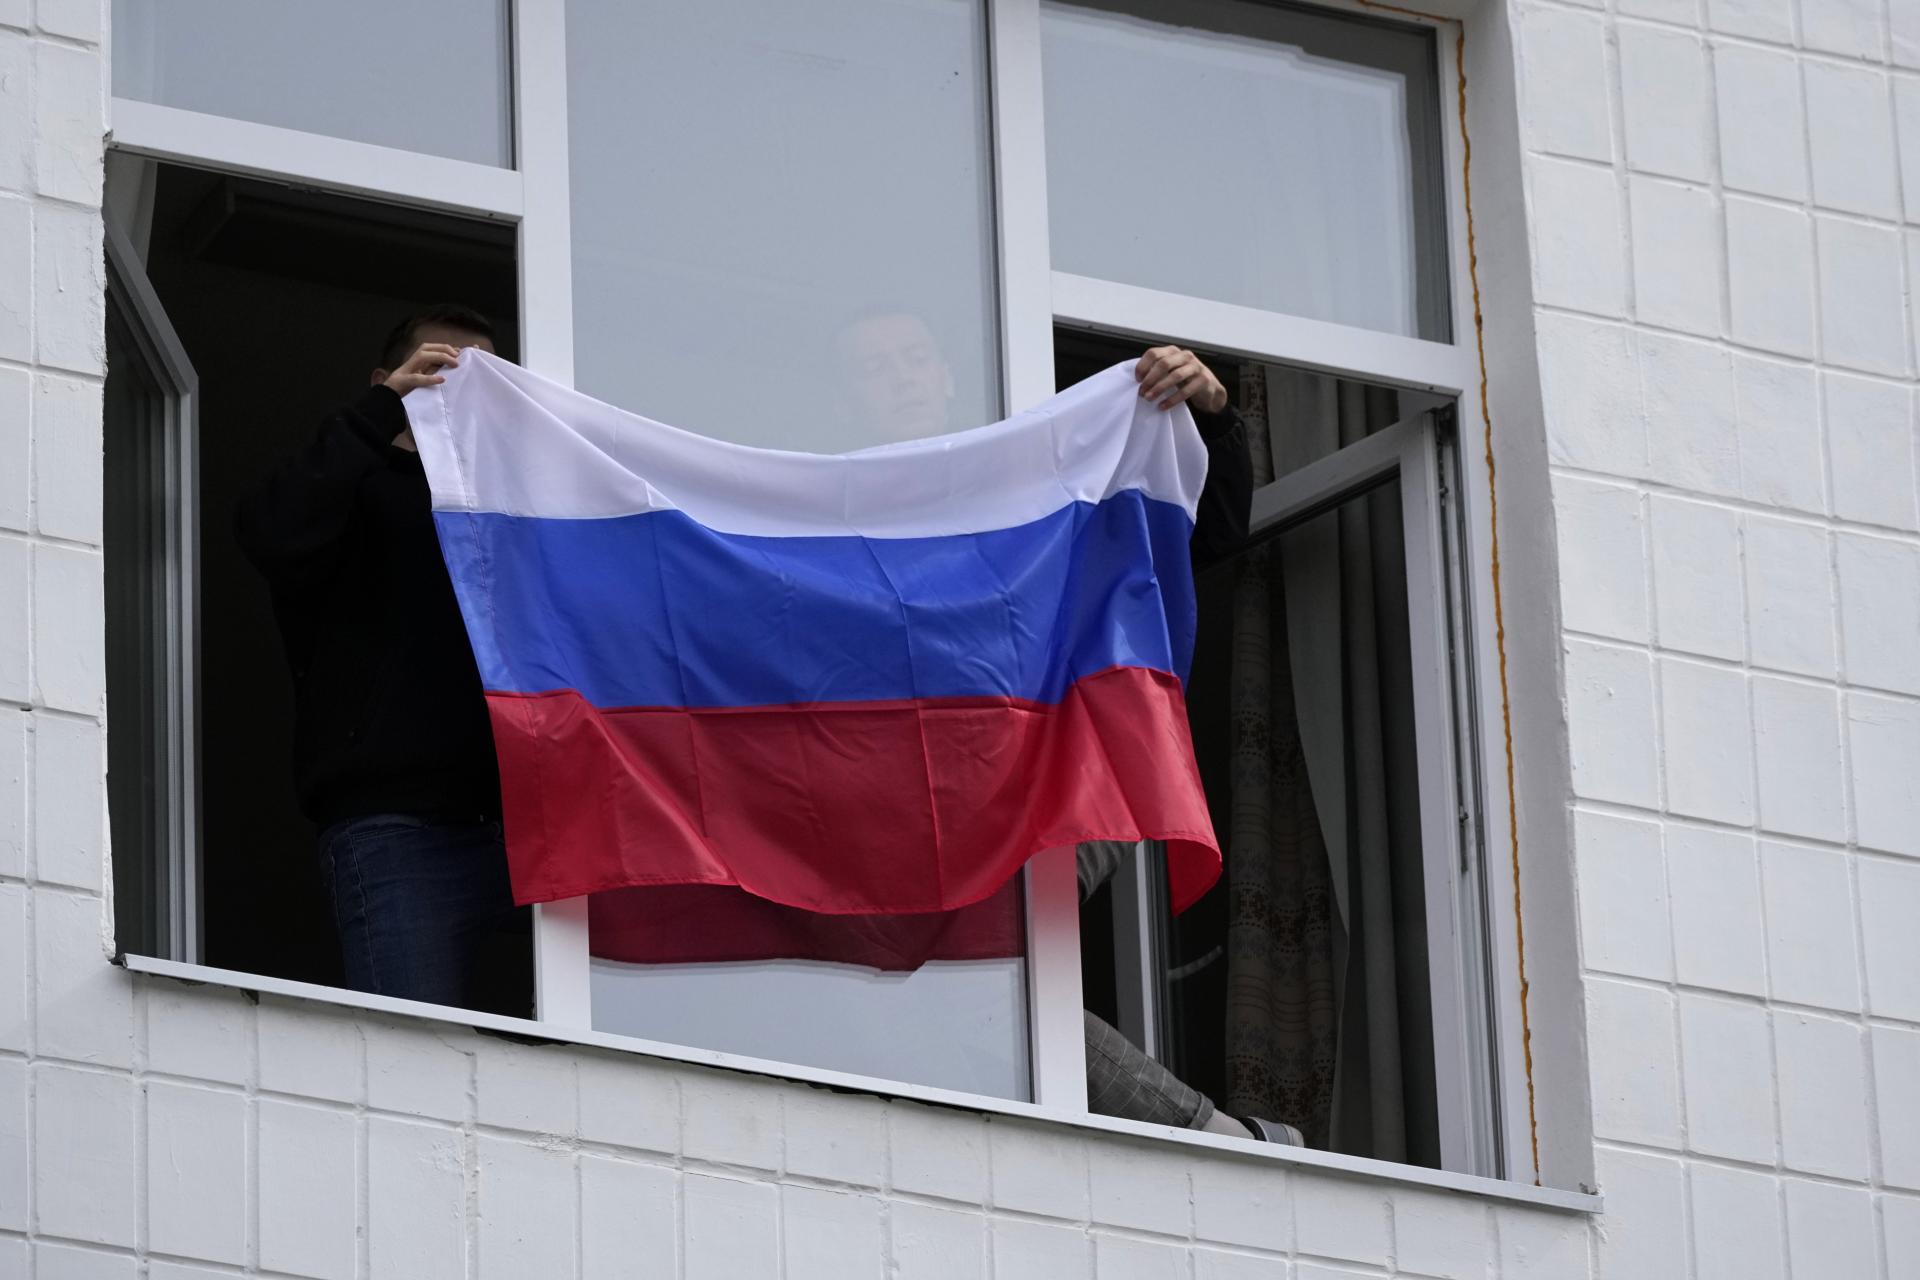 Rusko sa rozšíri. Putin zajtra anektuje okupované časti Ukrajiny, zvolal veľkú ceremóniu